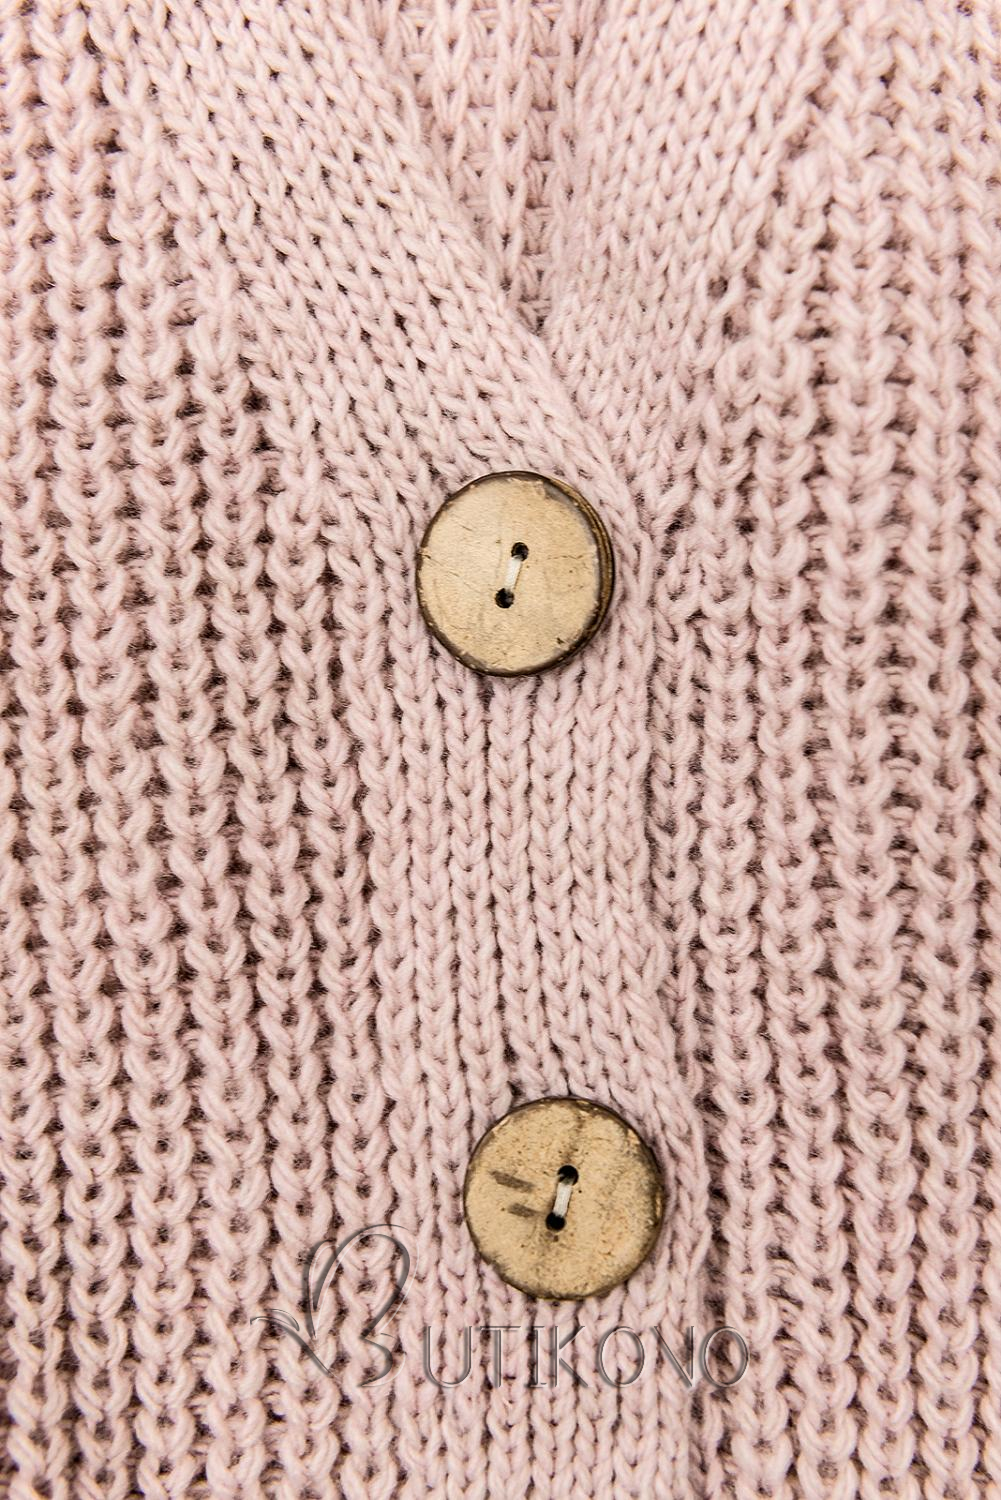 Půdrově růžový pletený svetr na knoflíky